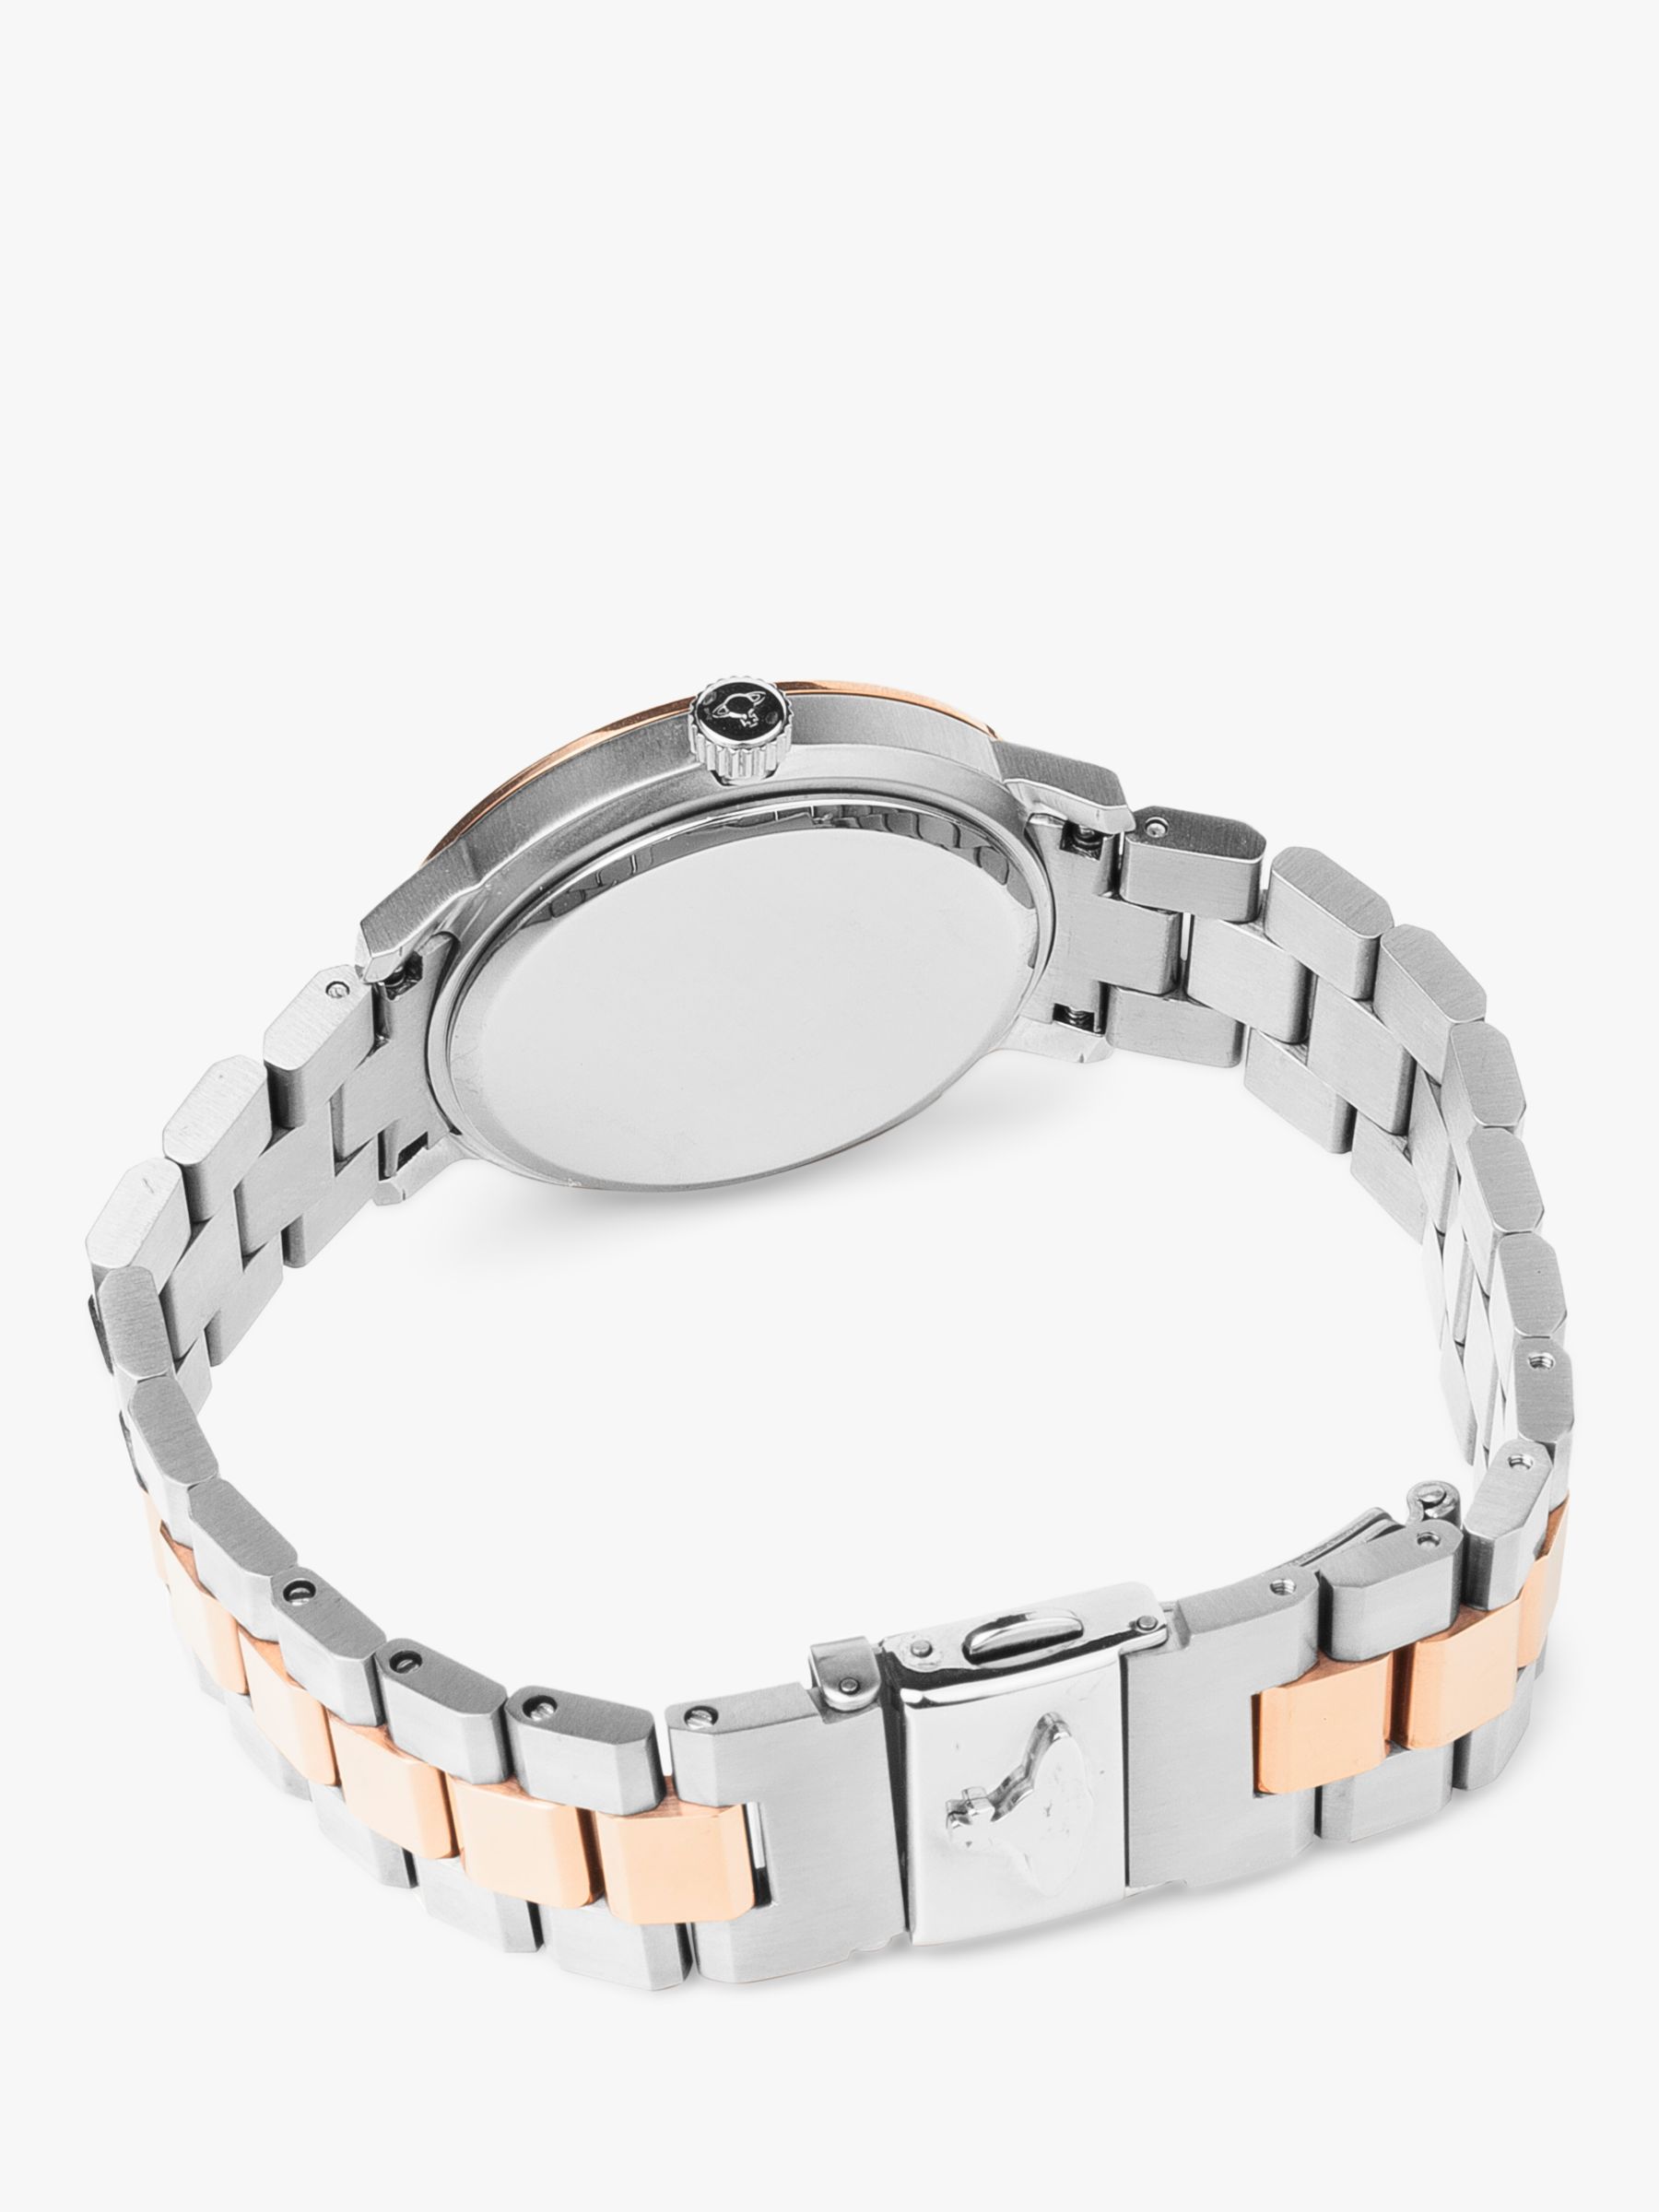 Buy Vivienne Westwood Women's Bloomsbury Date Bracelet Strap Watch Online at johnlewis.com